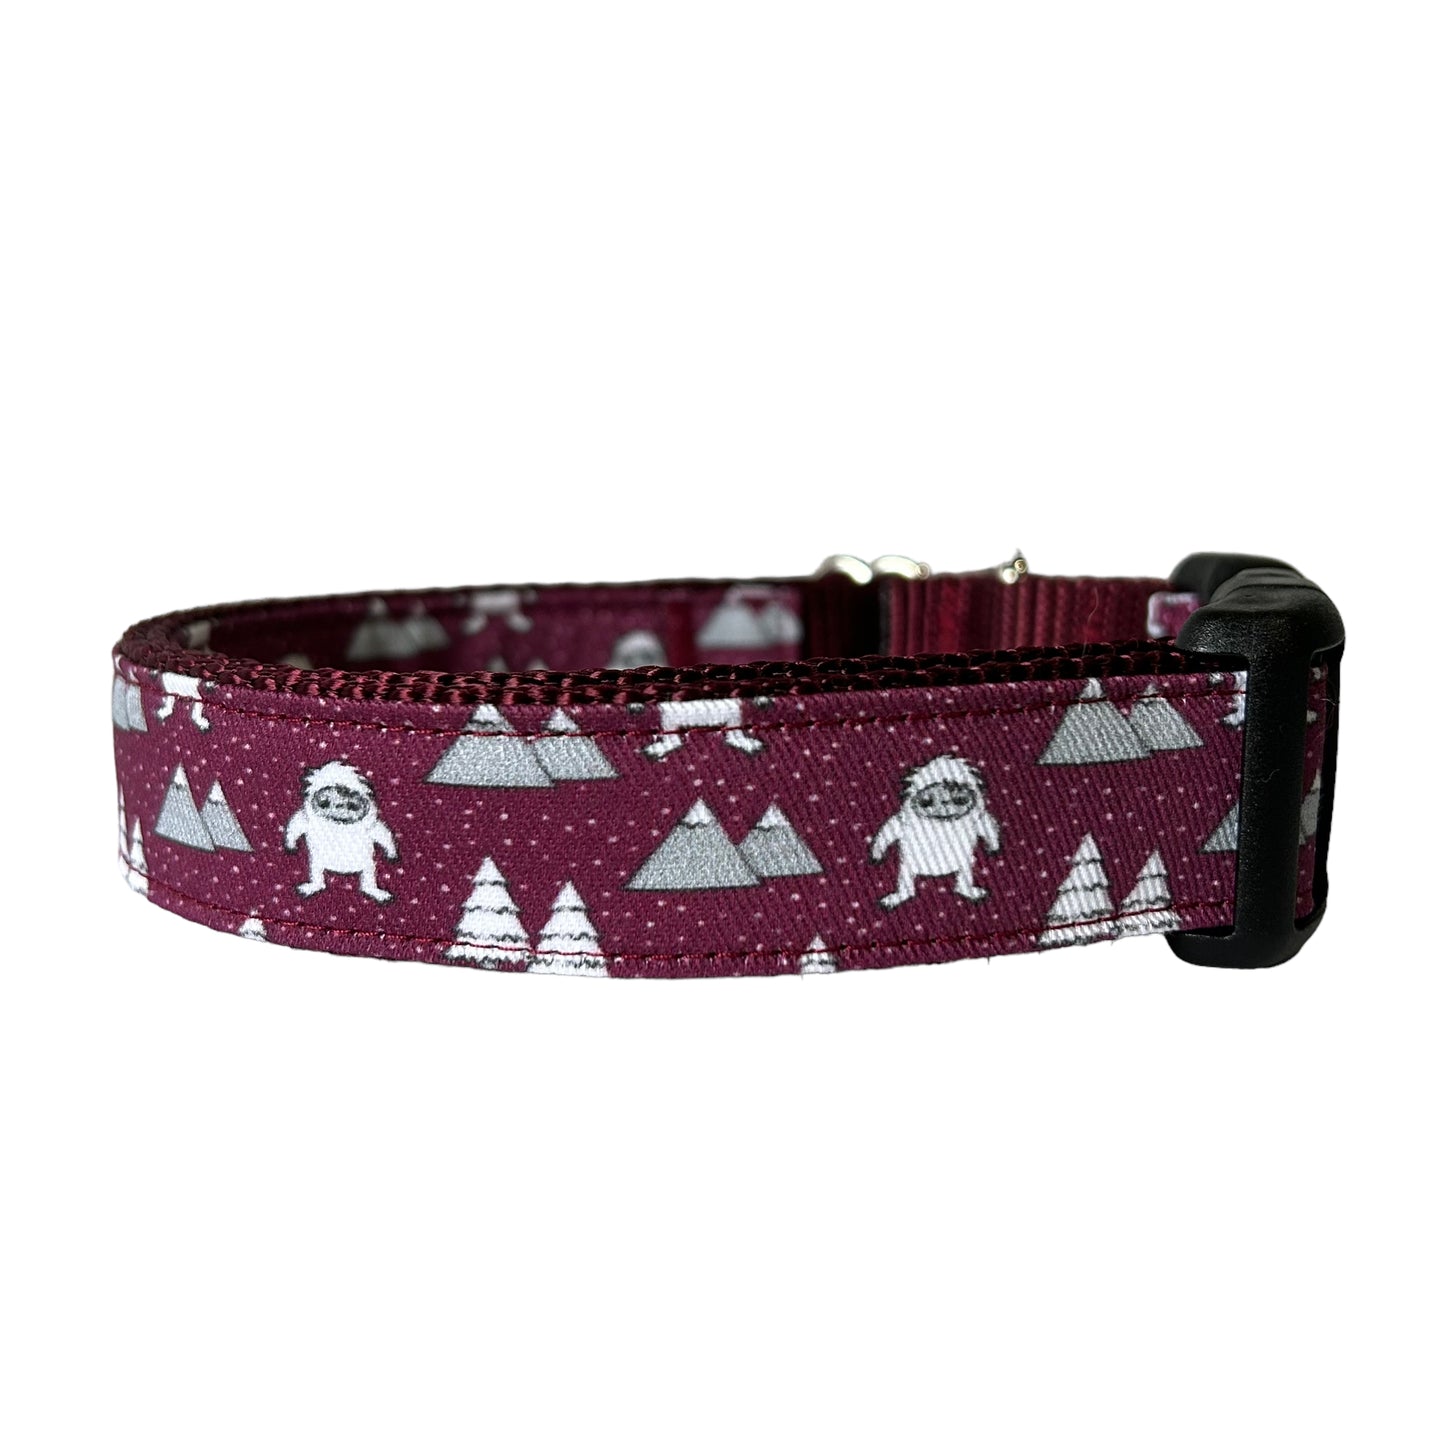 Yeti Dog Collar in Maroon - Sew Fetch Dog Company